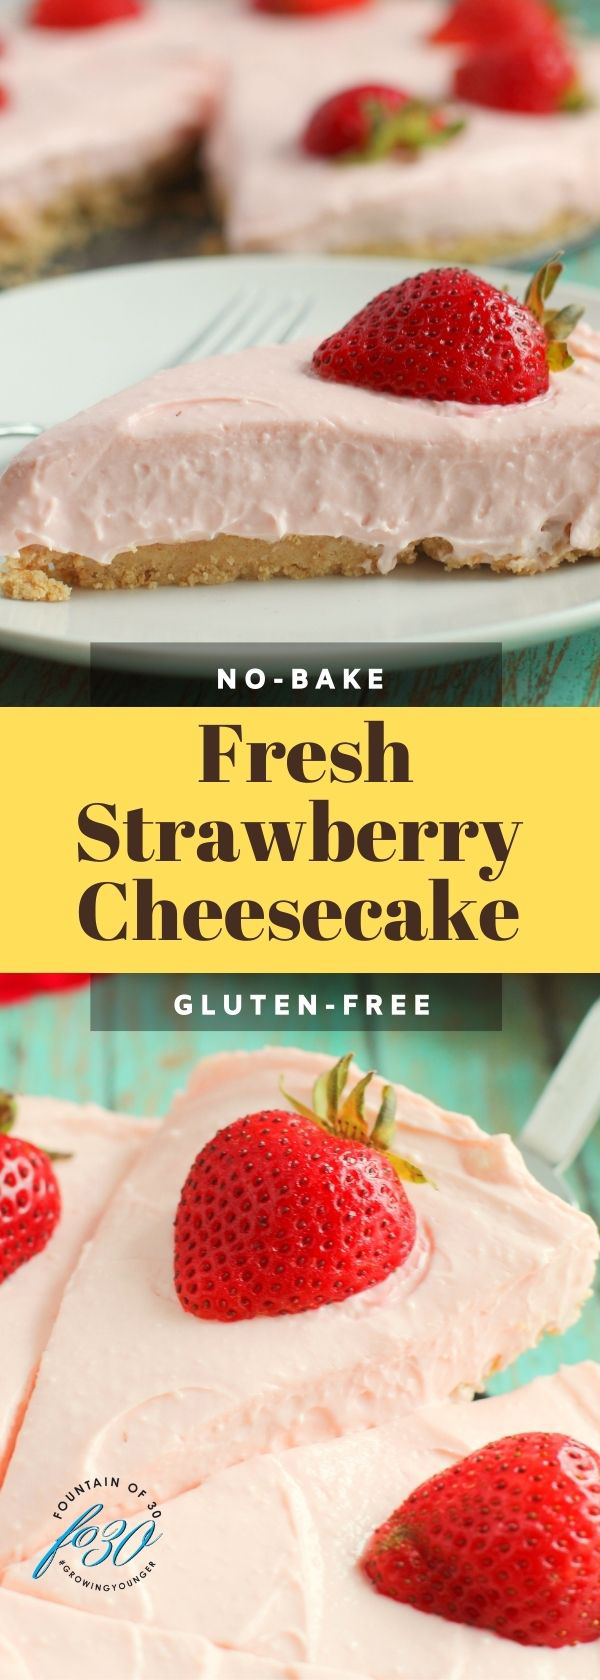 gluten free fresh strawberry cheesecake recipe